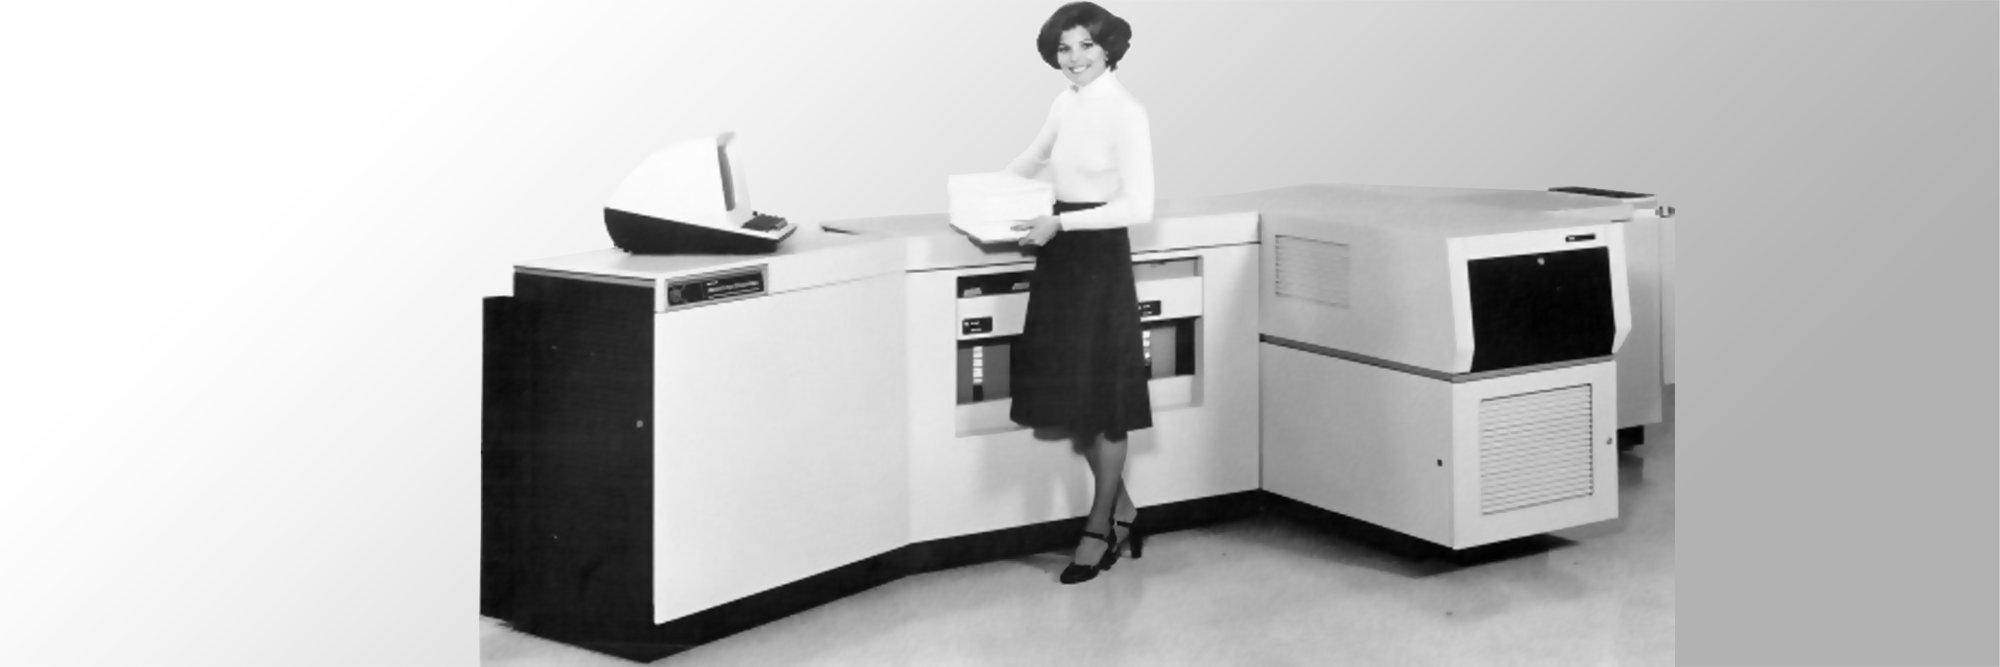 Первый лазерный принтер Xerox 9700